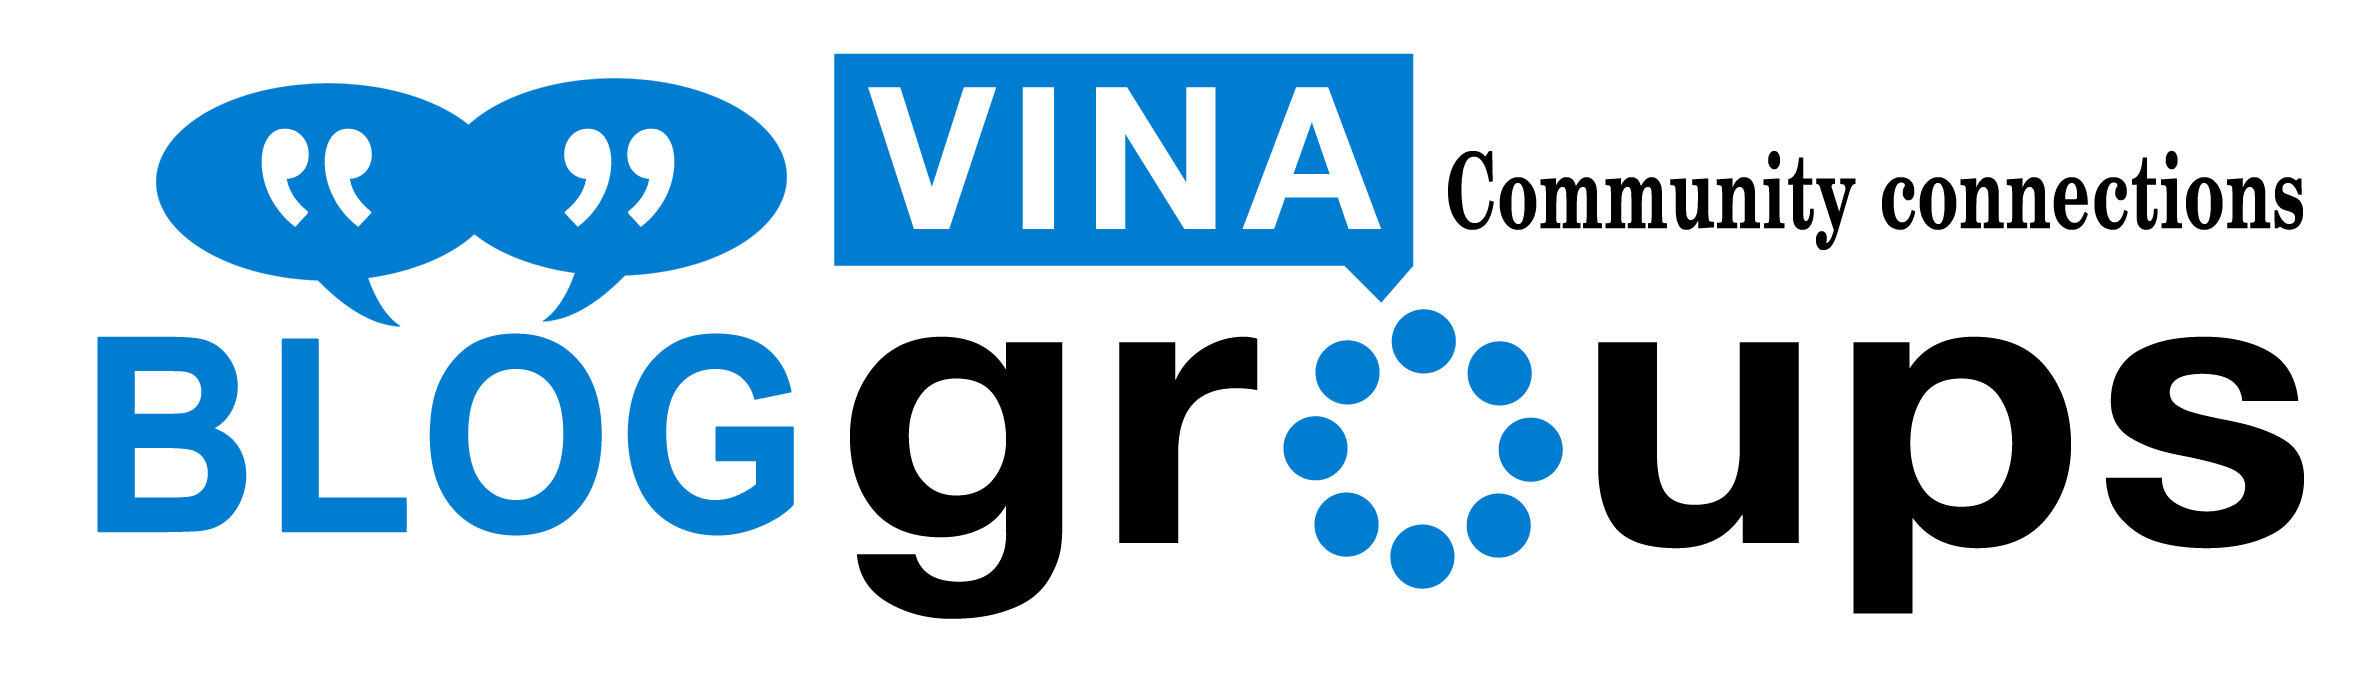 Bình chọn Vinagroups vào Top 18 Start Up Việt Nam năm 2016